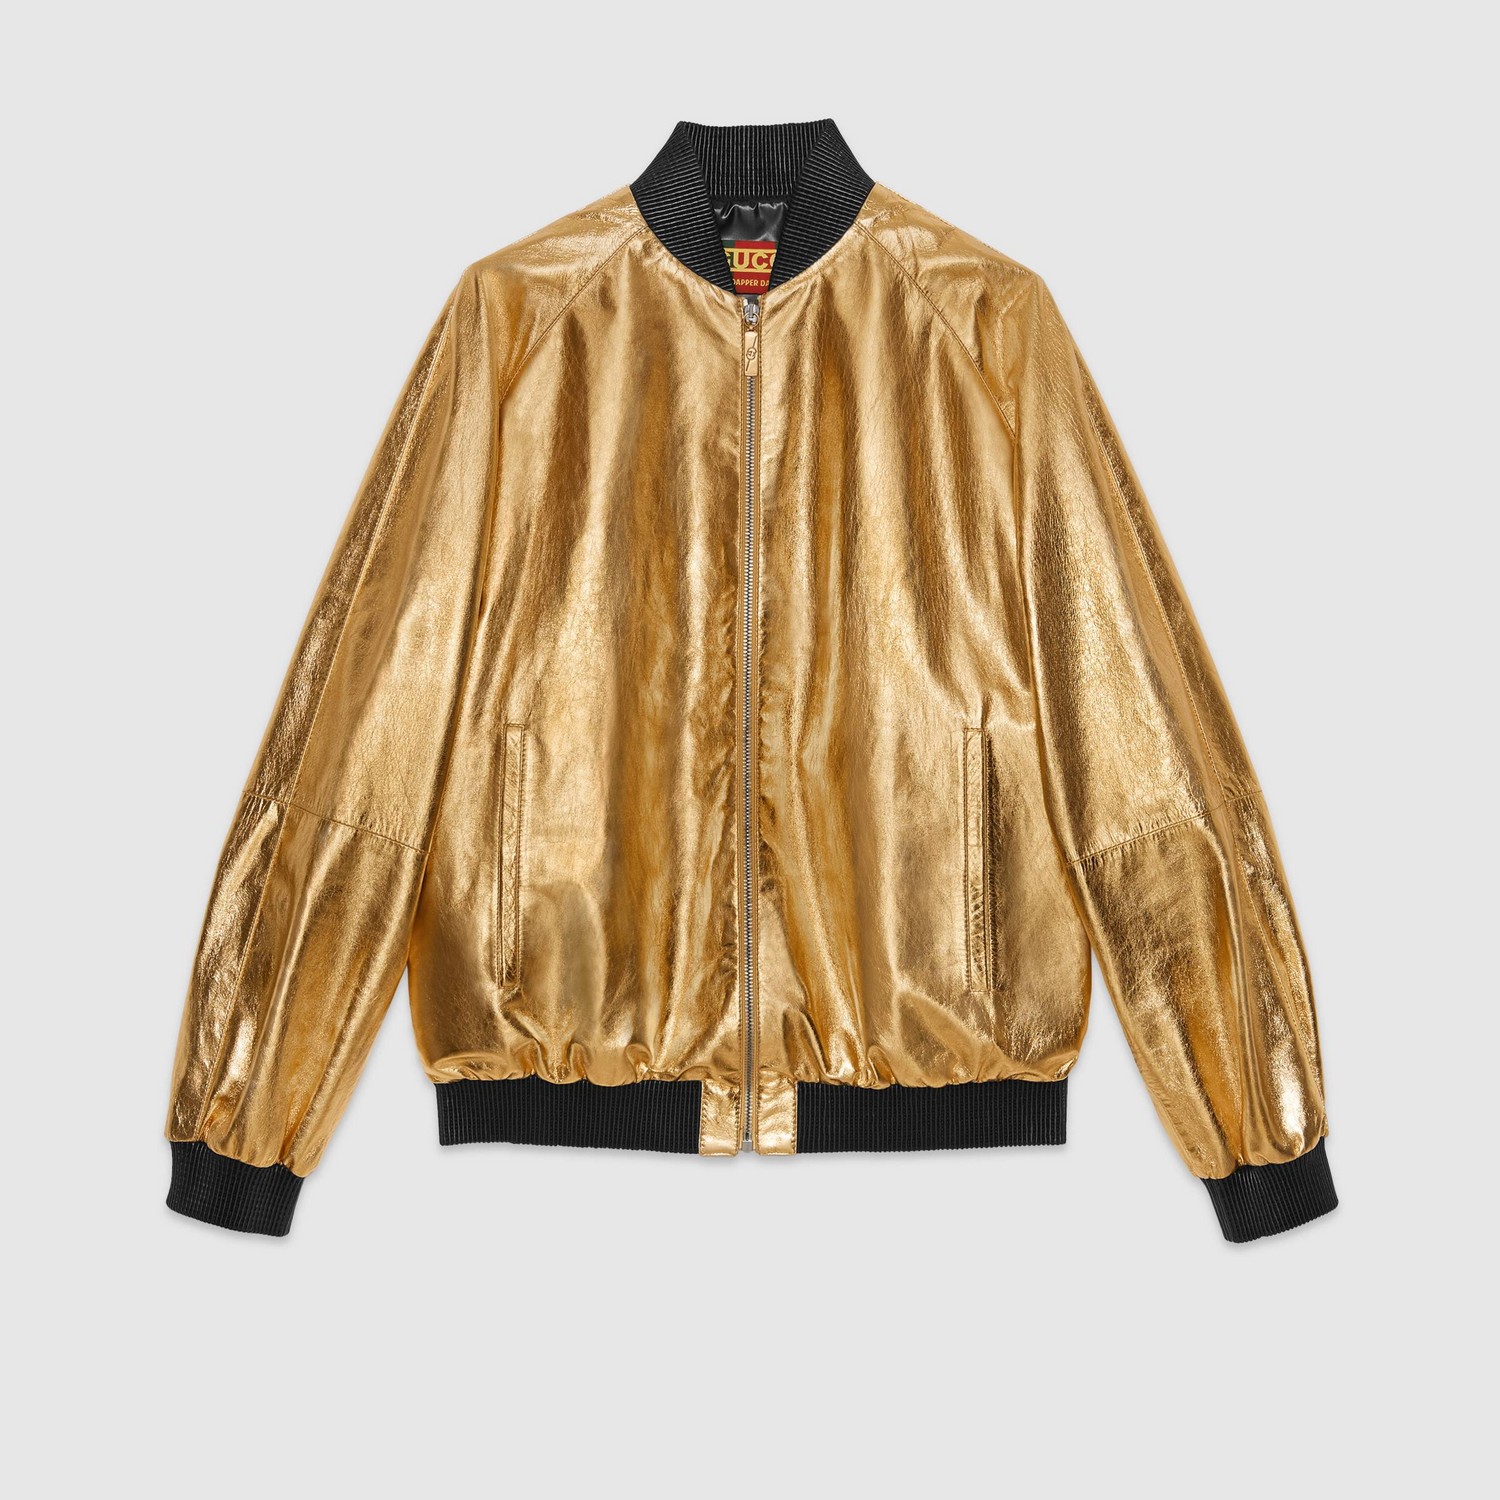 Gucci 2018 x Dapper Dan Bomber Jacket - Neutrals Jackets, Clothing -  GUC1049872